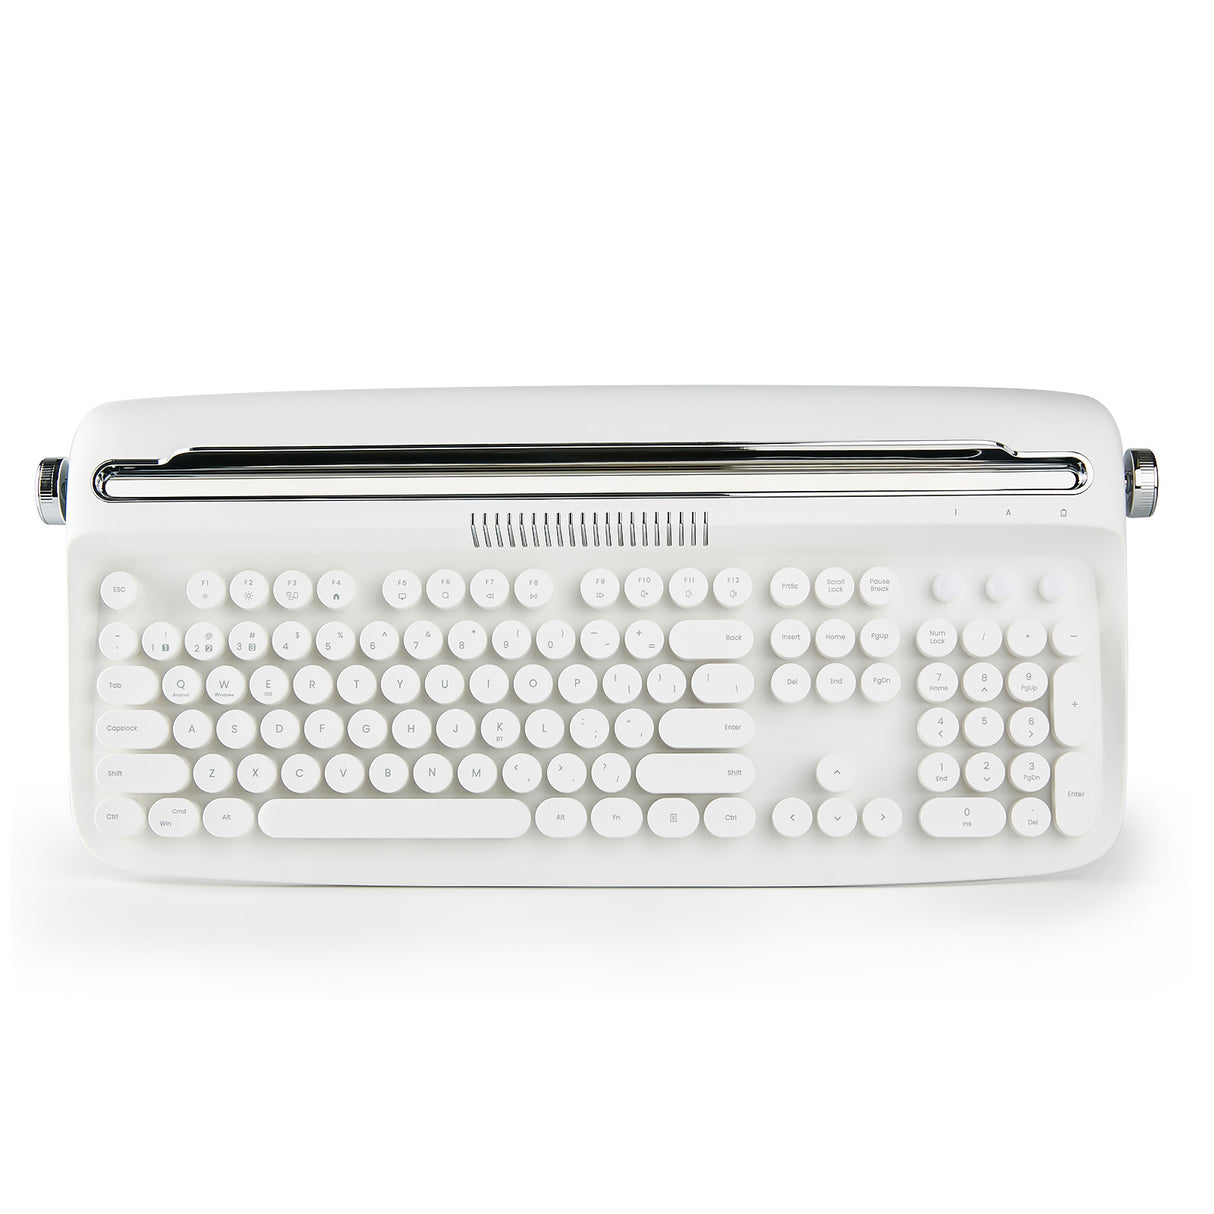 YUNZII ACTTO B503 Wireless Keyboard - Ivory Butter